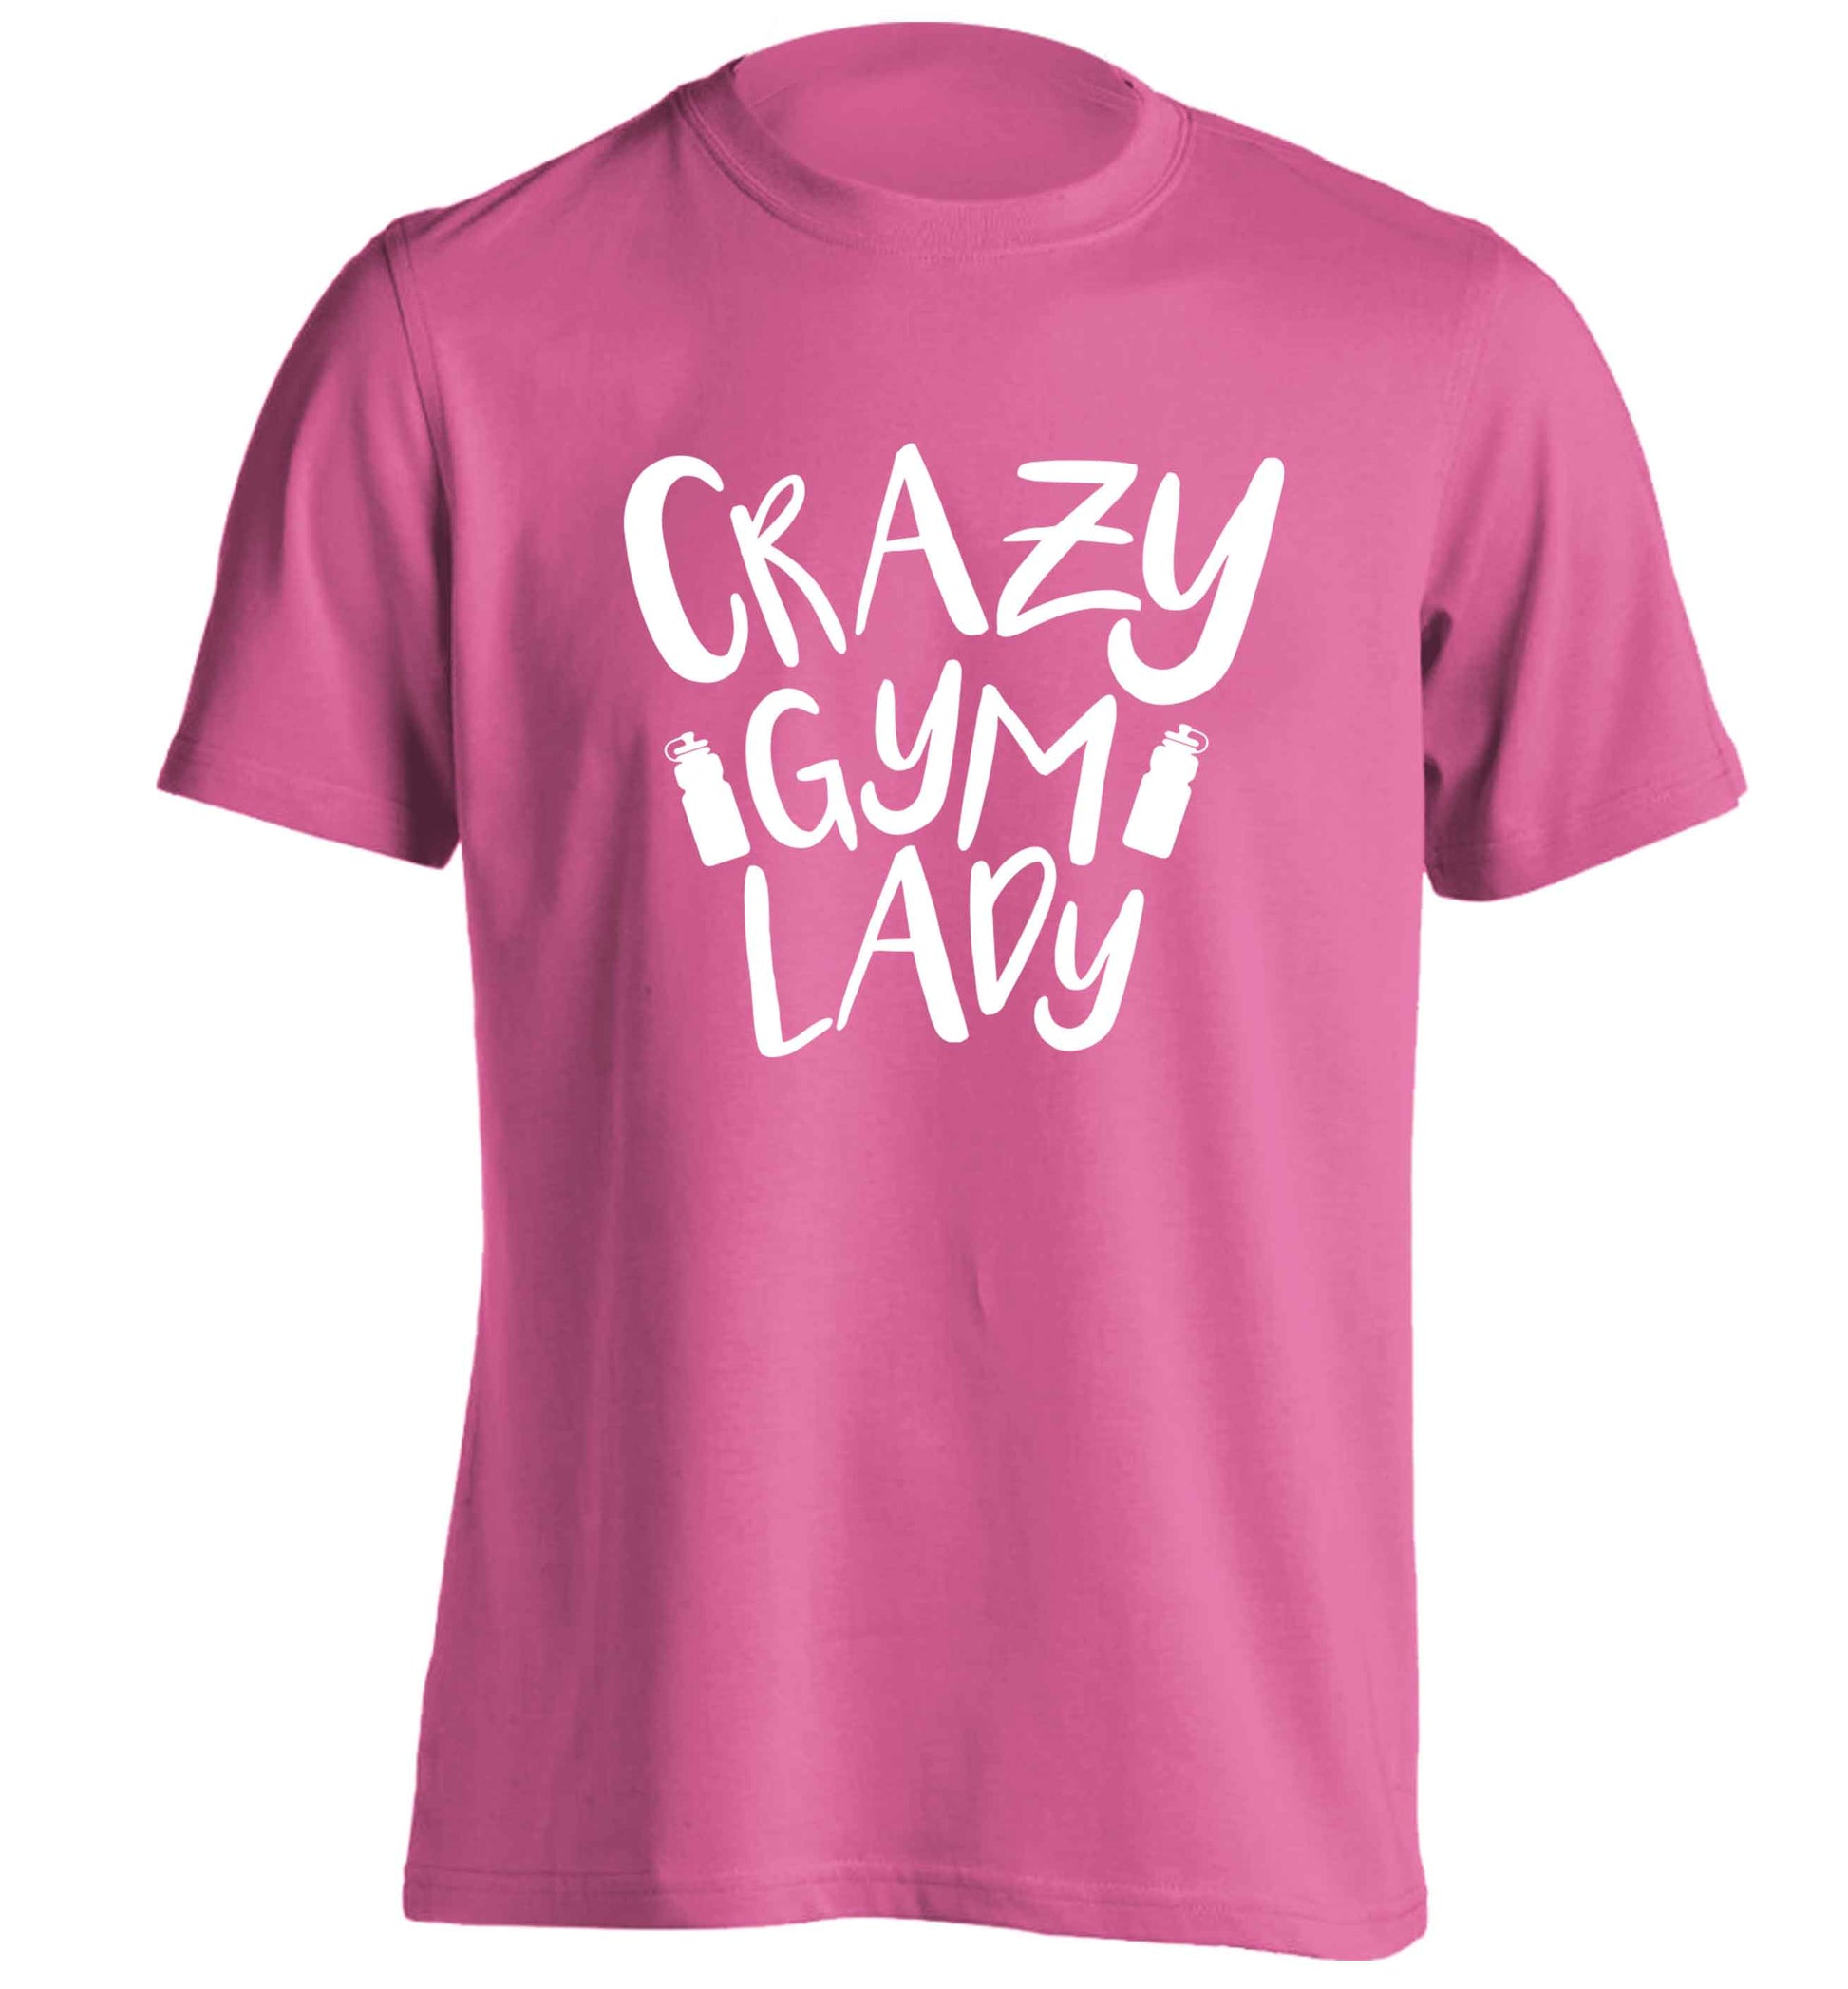 Crazy gym lady adults unisex pink Tshirt 2XL